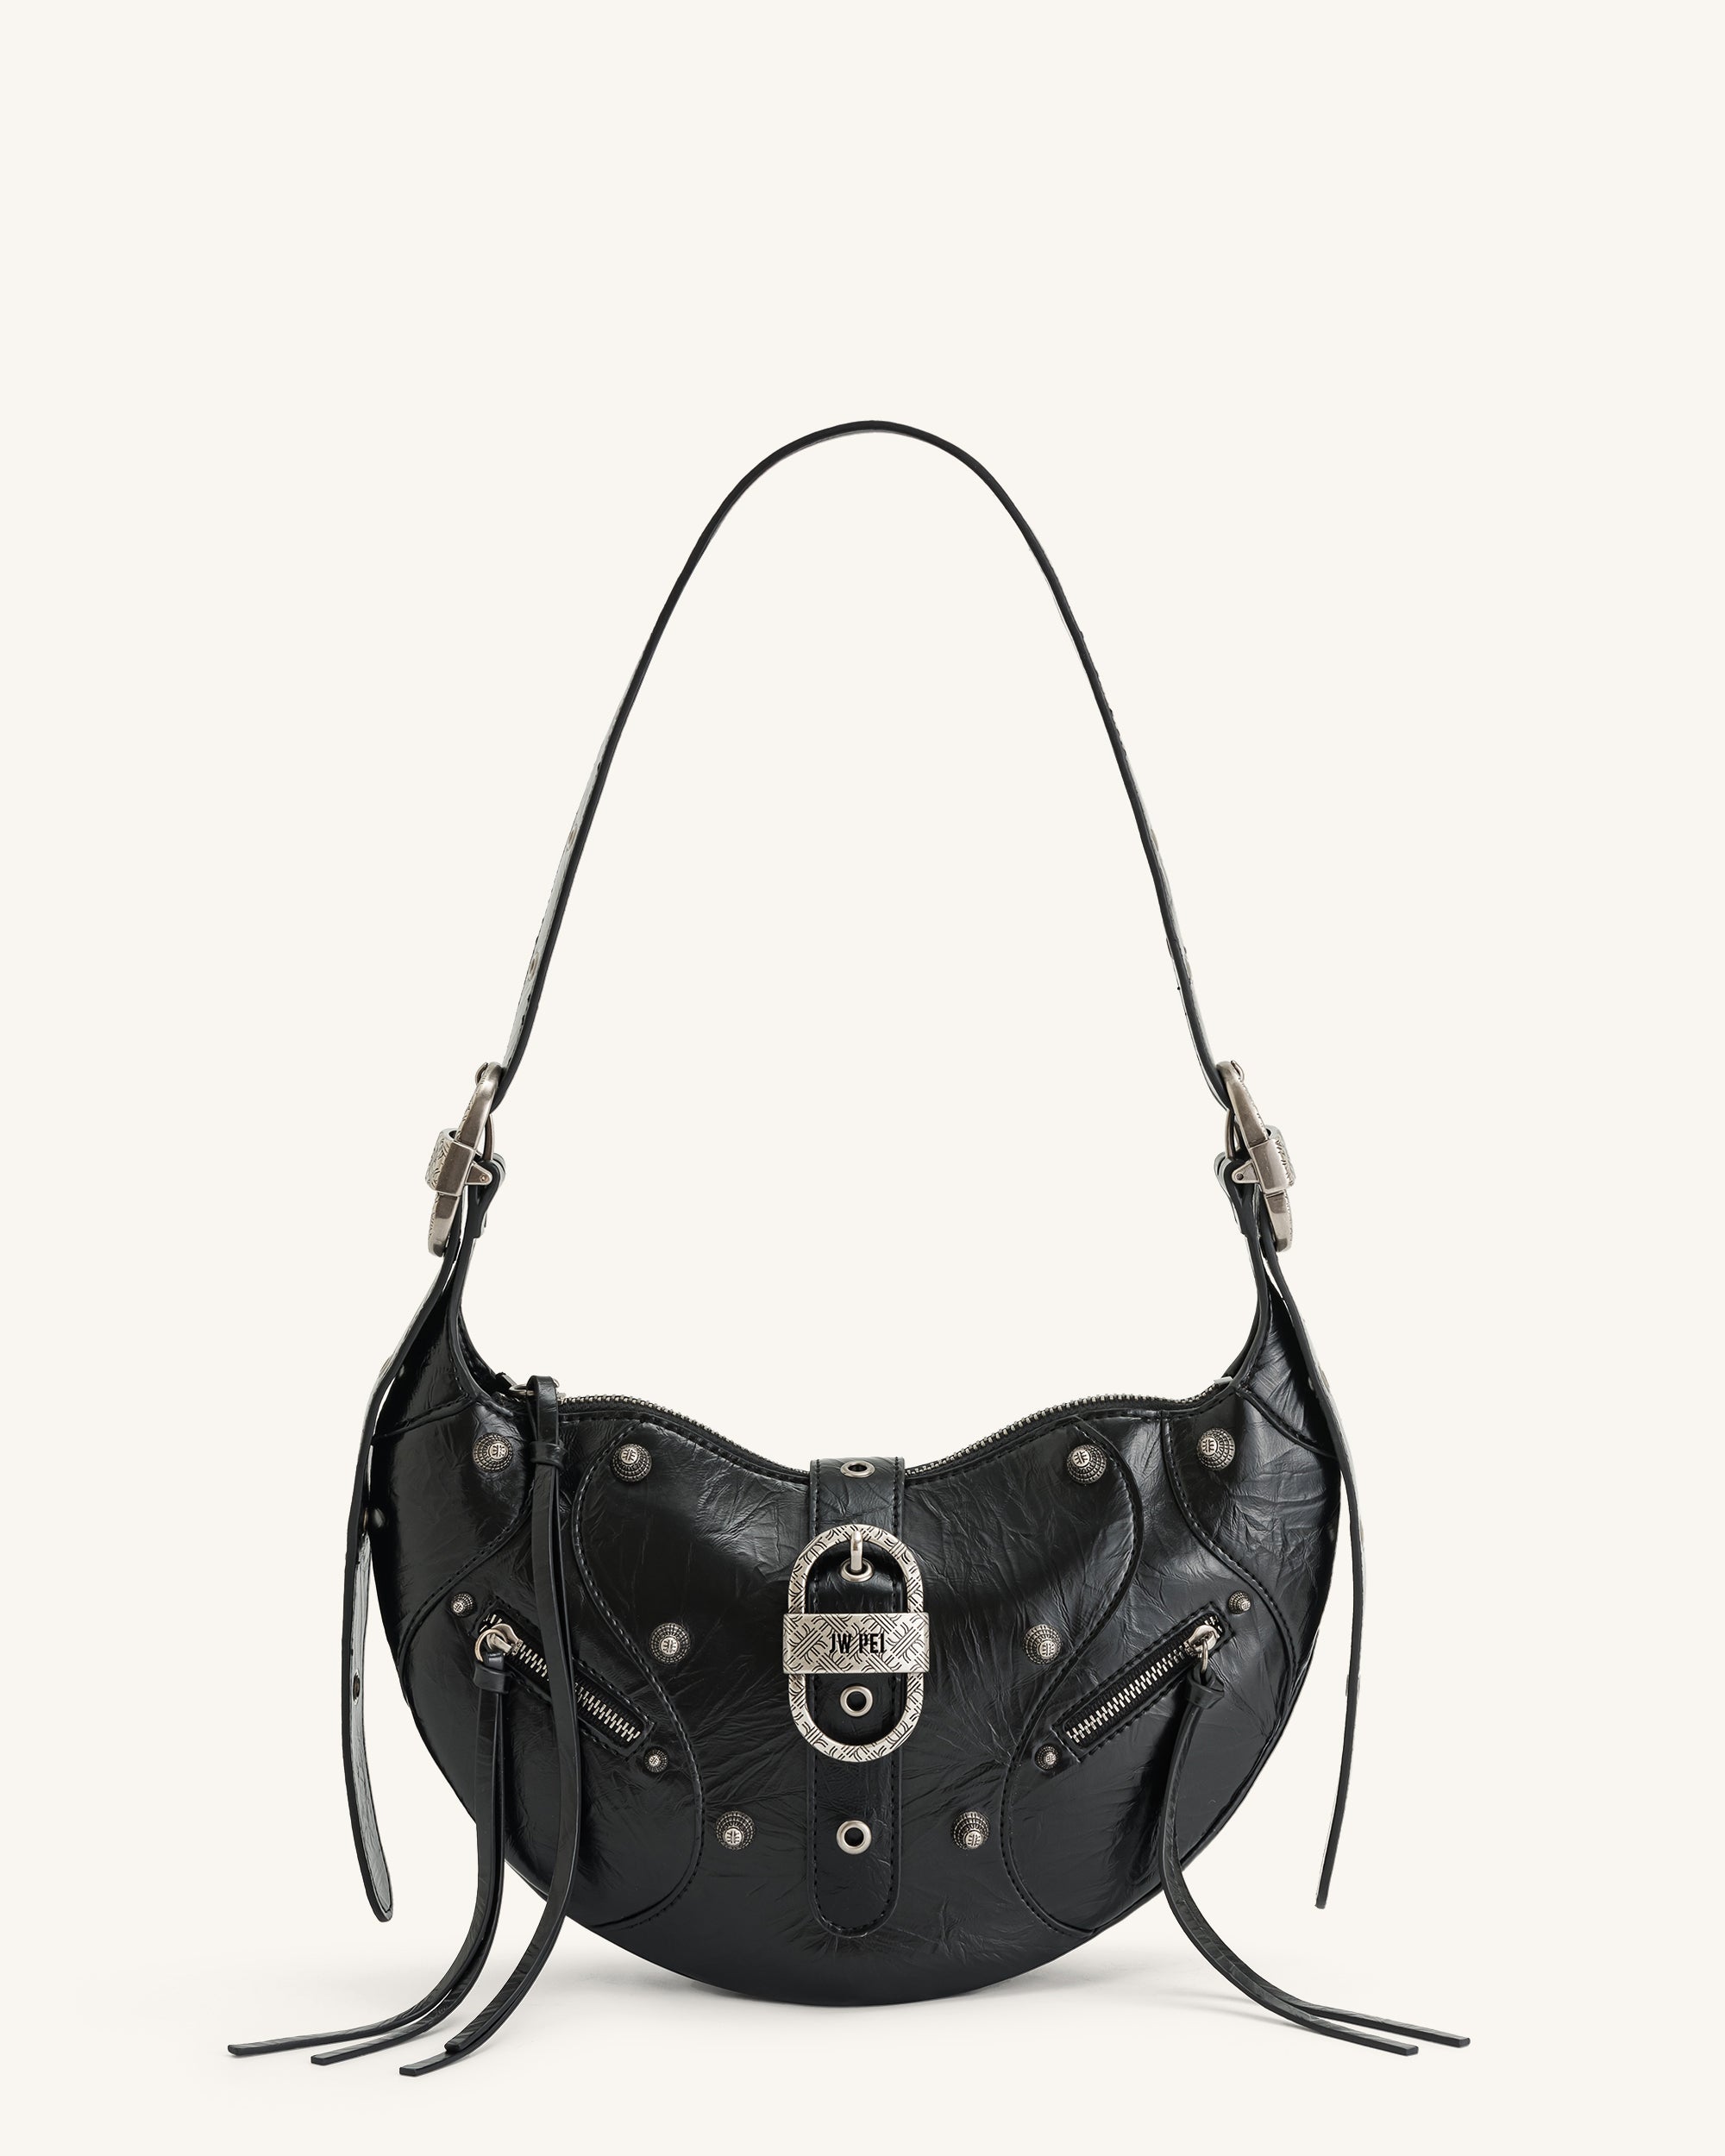 JW Pei Women's Crossbody Bags - Black